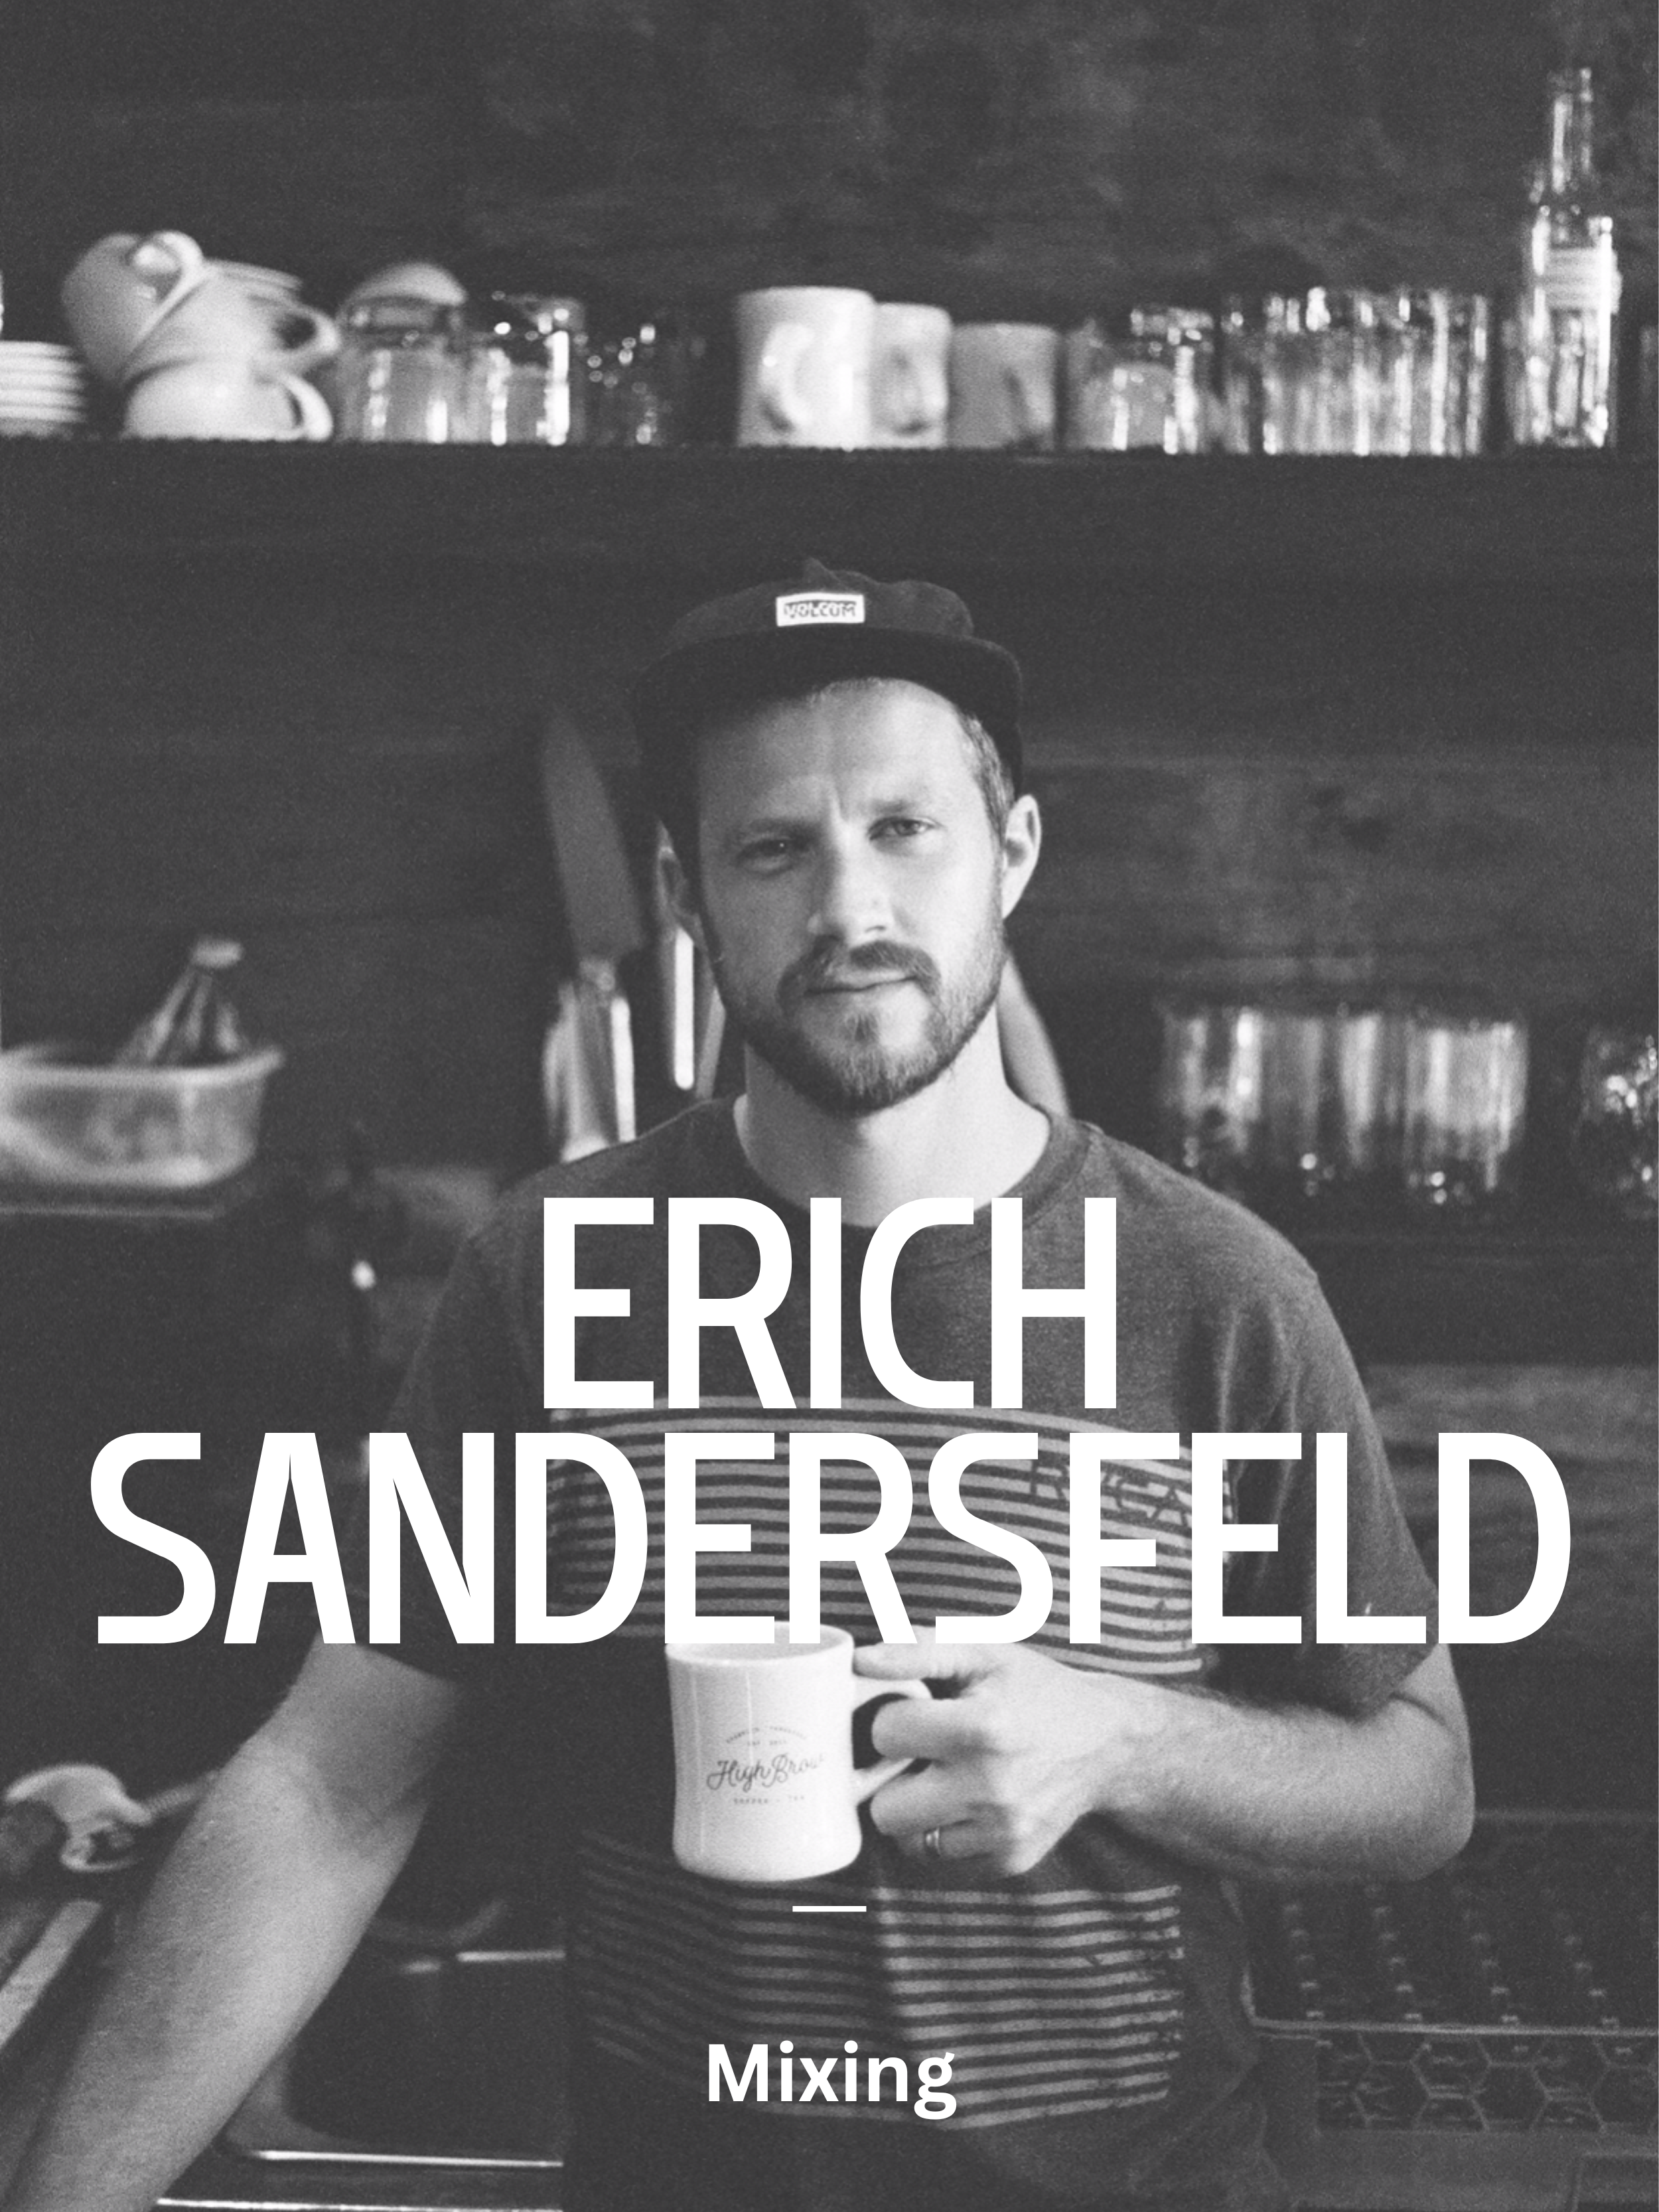 Erich Sandersfeld